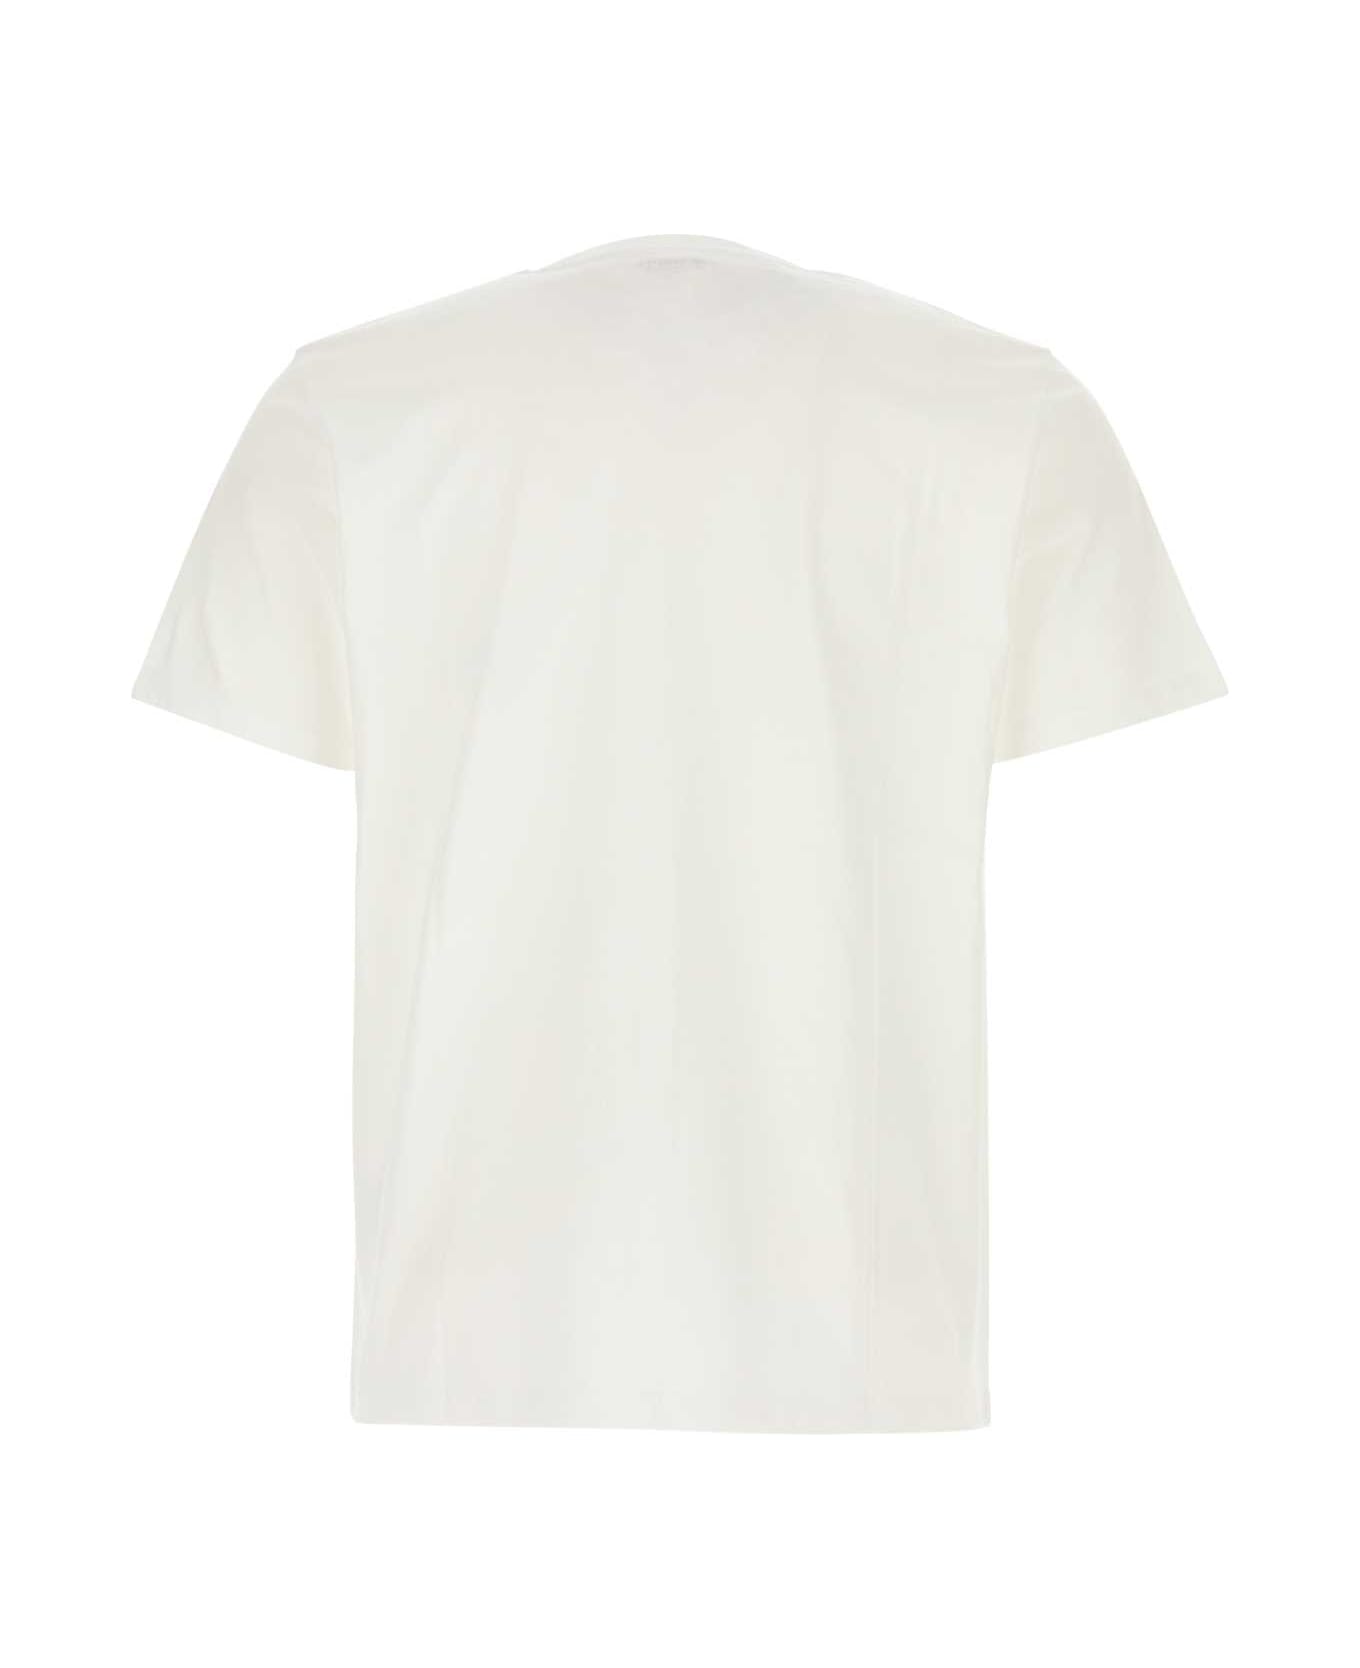 Carhartt White Cotton S/s Pocket T-shirt - WHITE Tシャツ